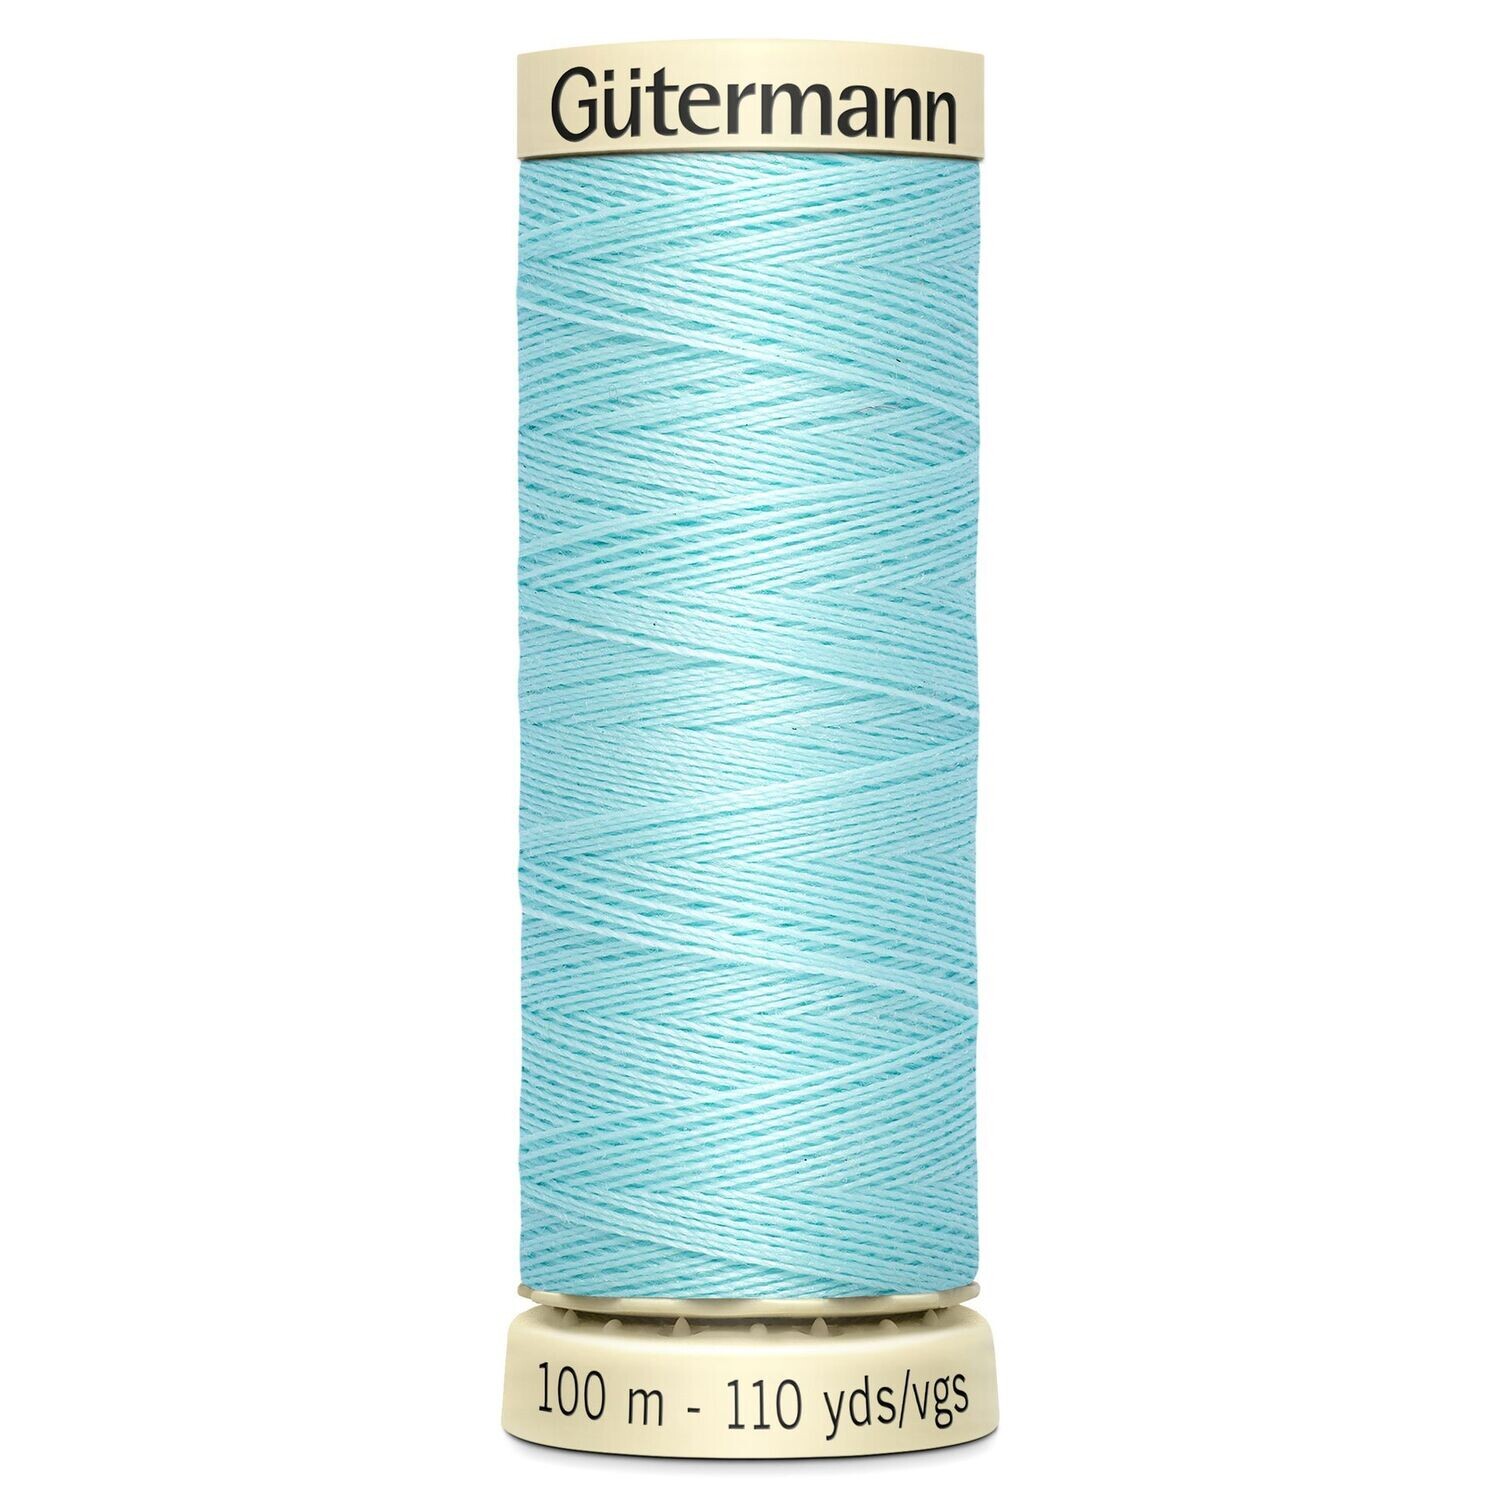 Sew All Thread 100m - Gutermann - Colour 053